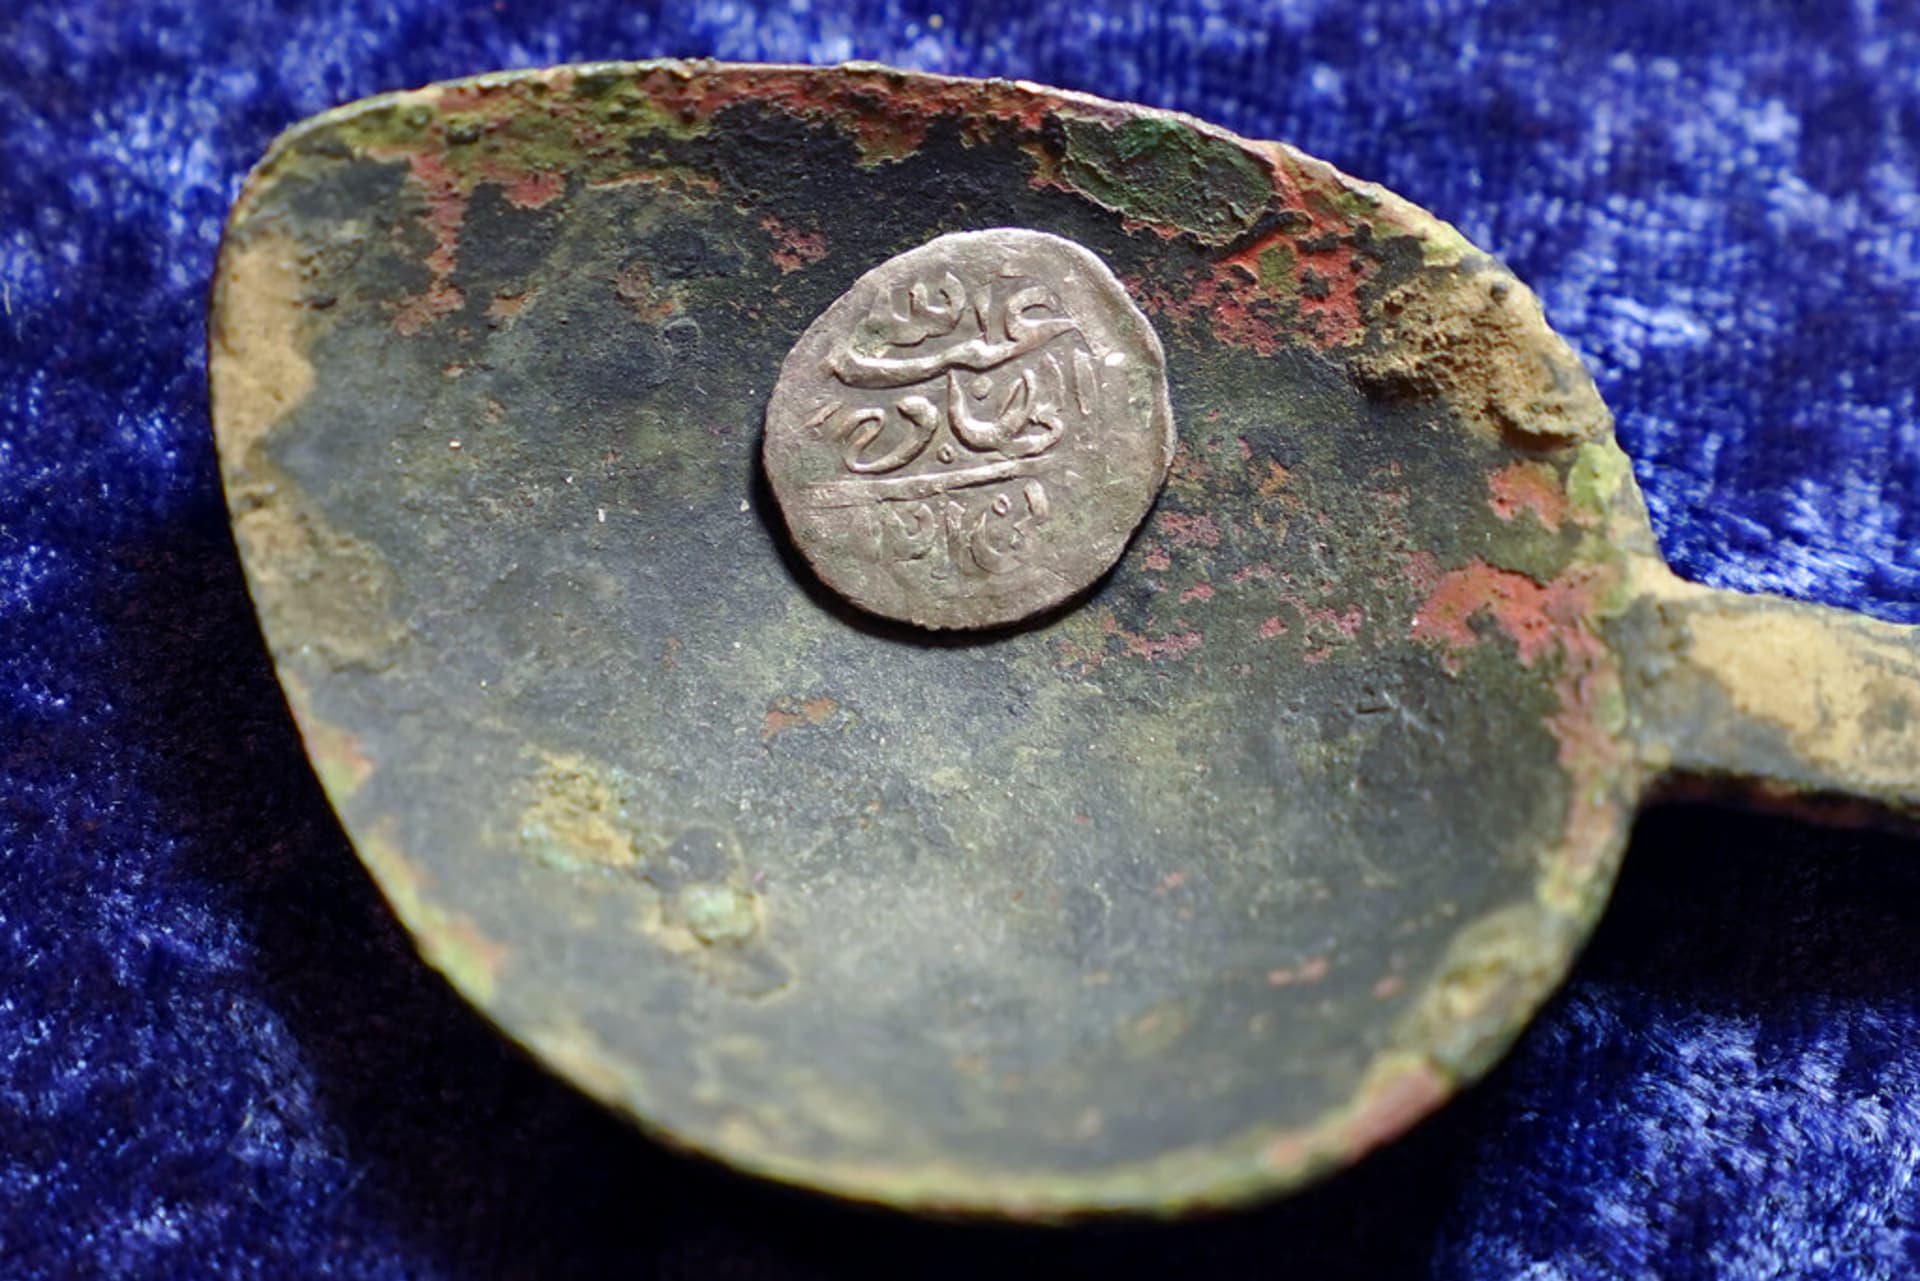 Nalezené mince